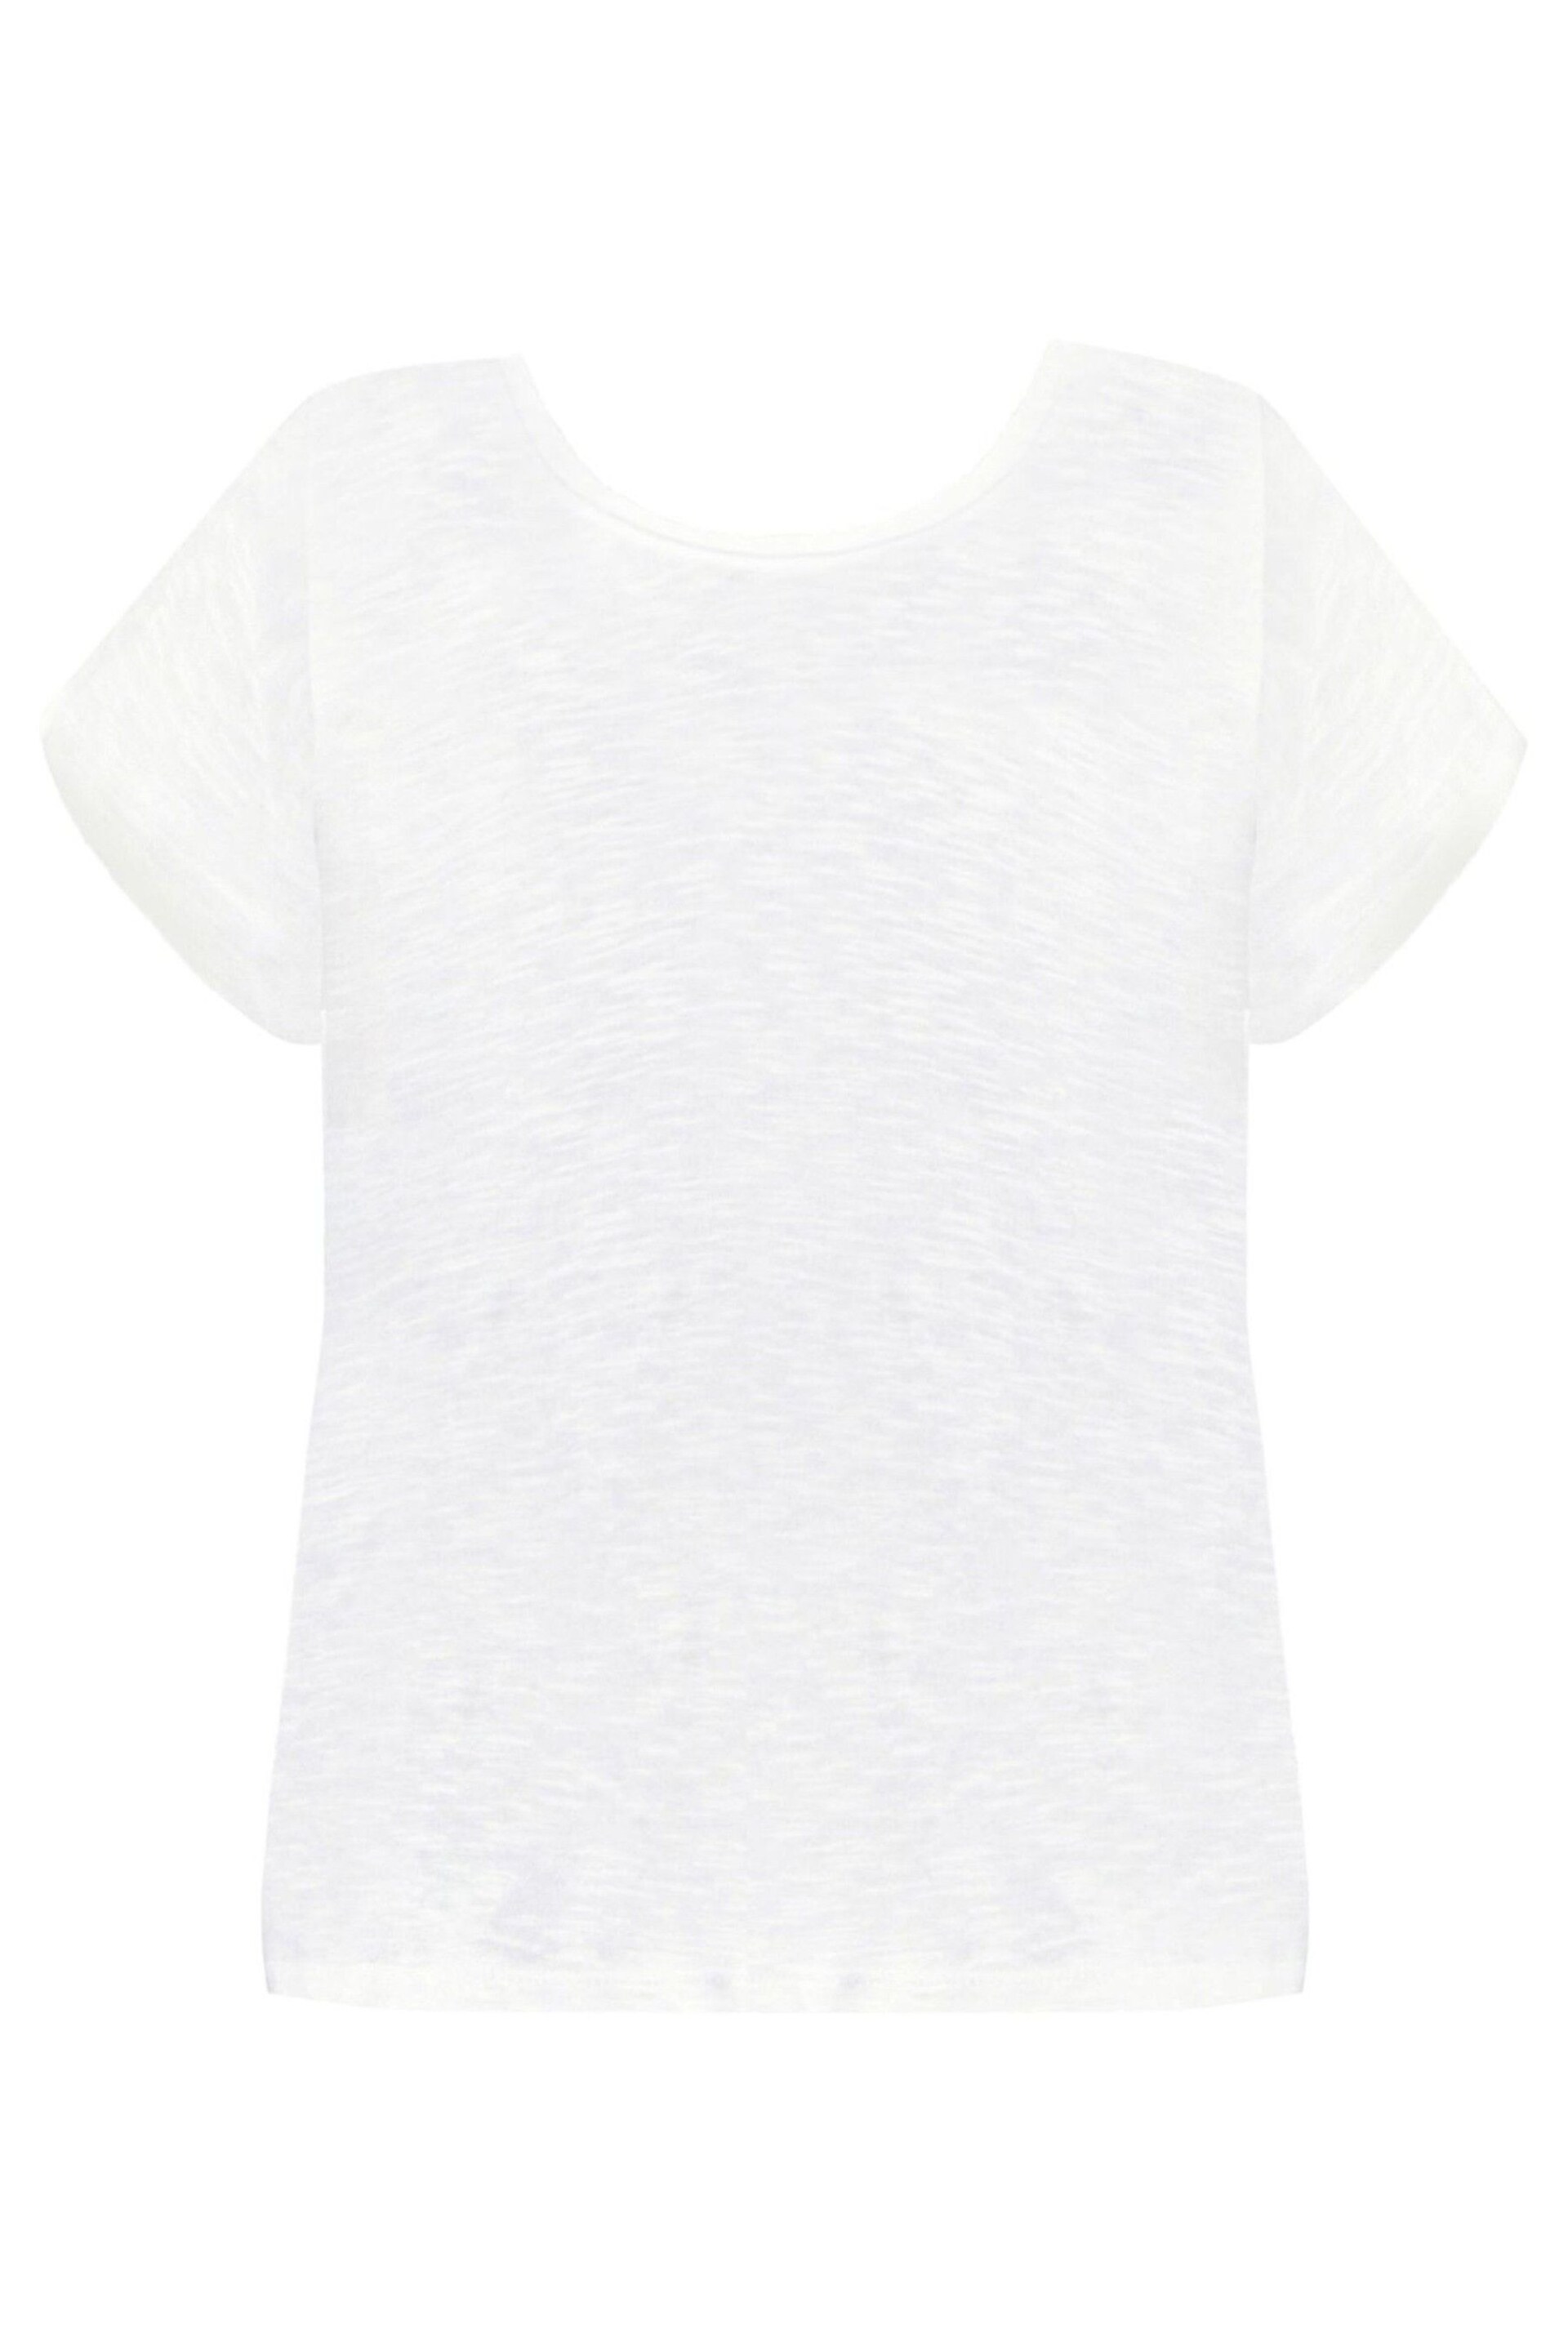 Live Unlimited Curve Cotton Slub Scoop Neck White T-Shirt - Image 4 of 4